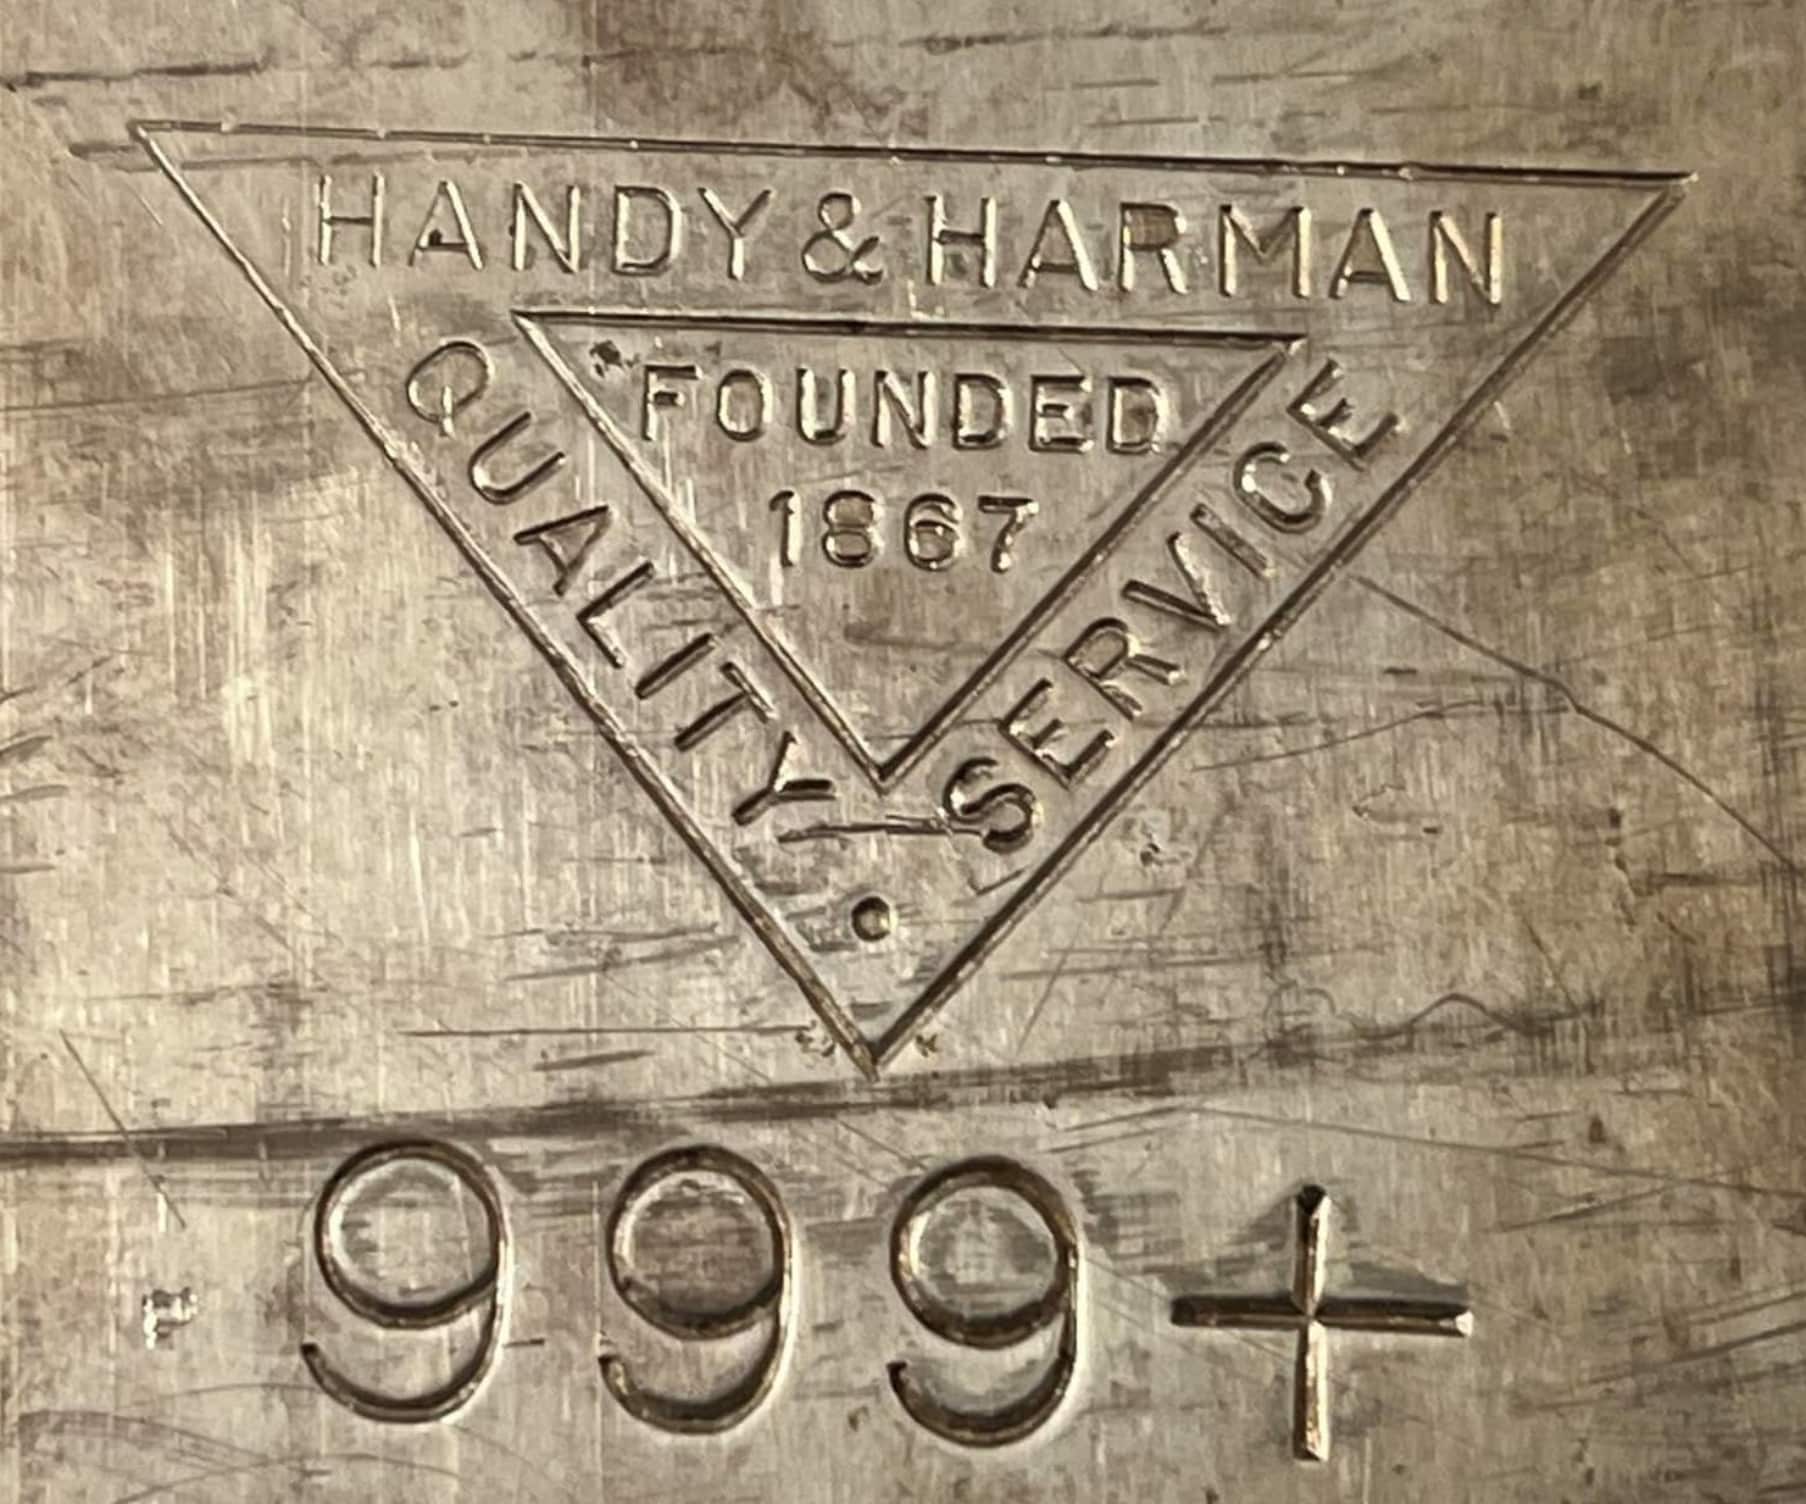 Handy & Harman vintage silver hallmark